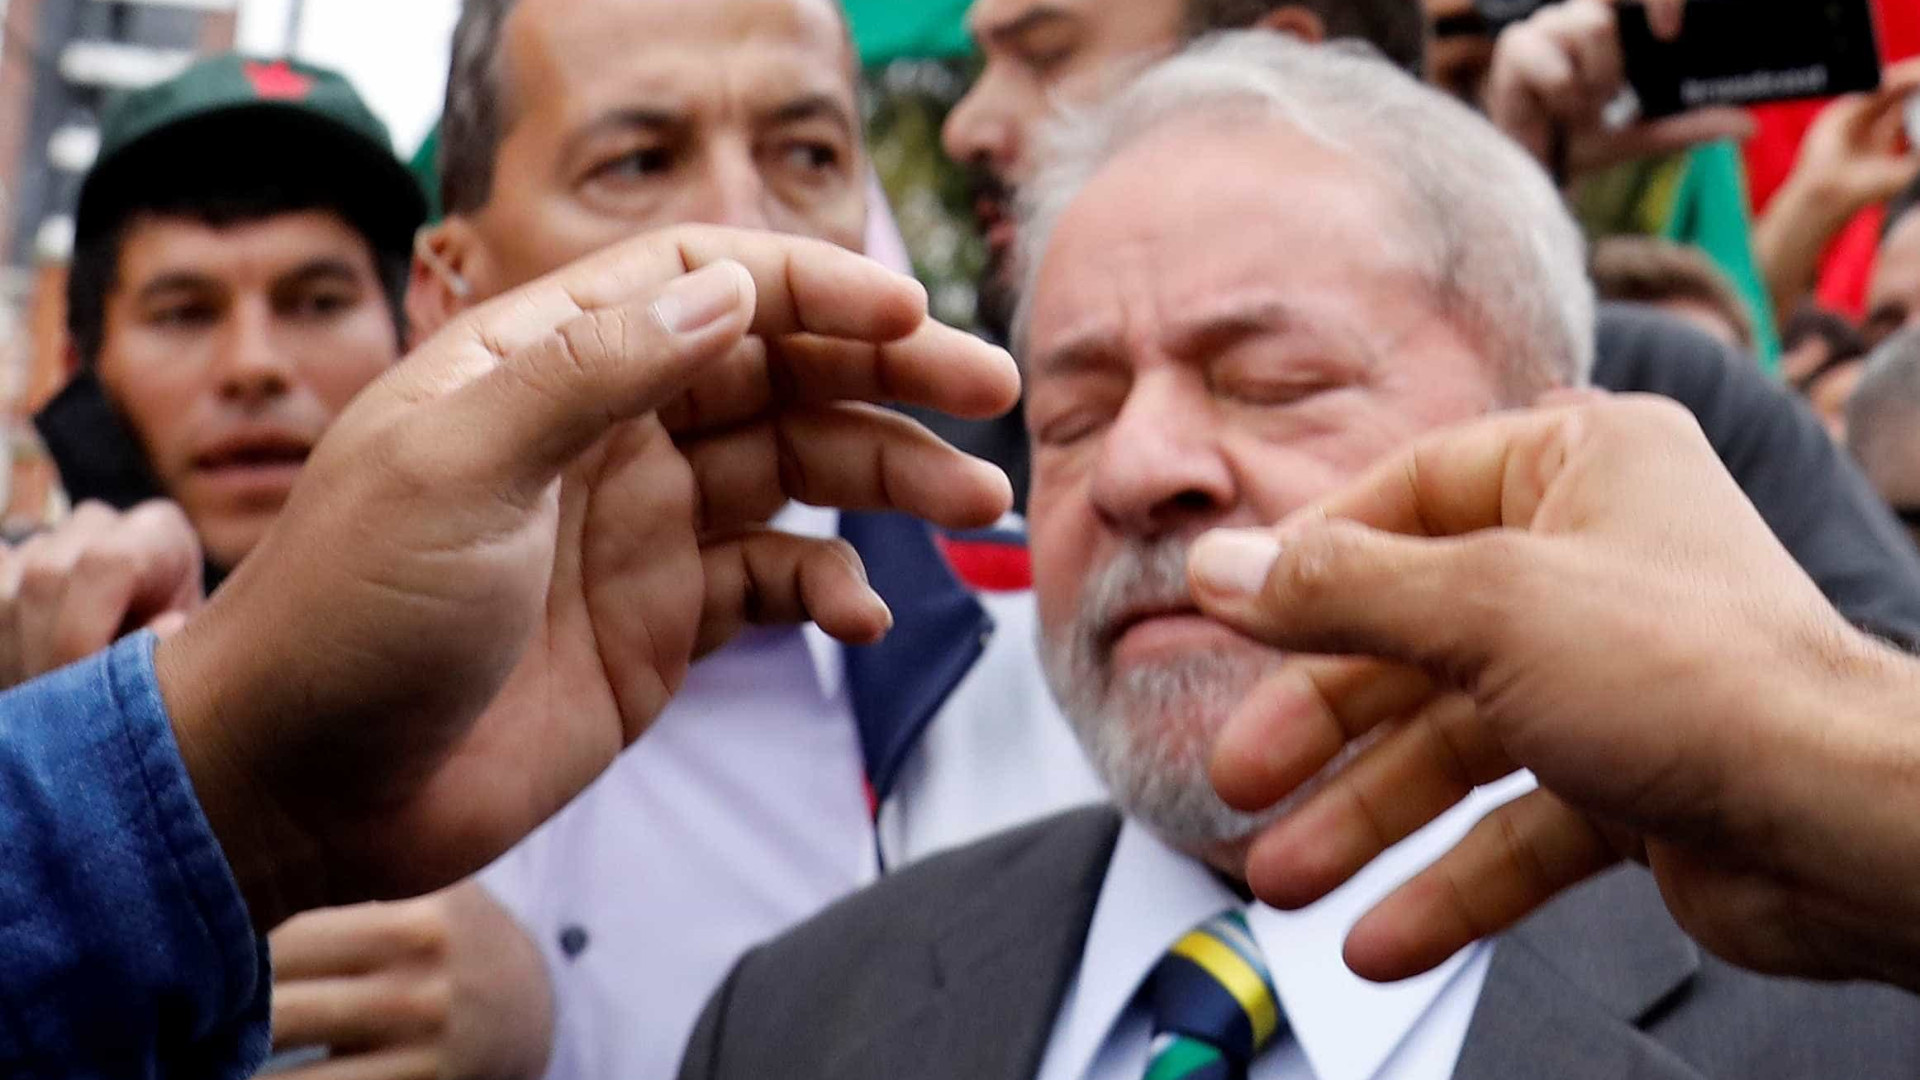 TRF4 mantém bloqueio de R$ 16 milhões do ex-presidente Lula